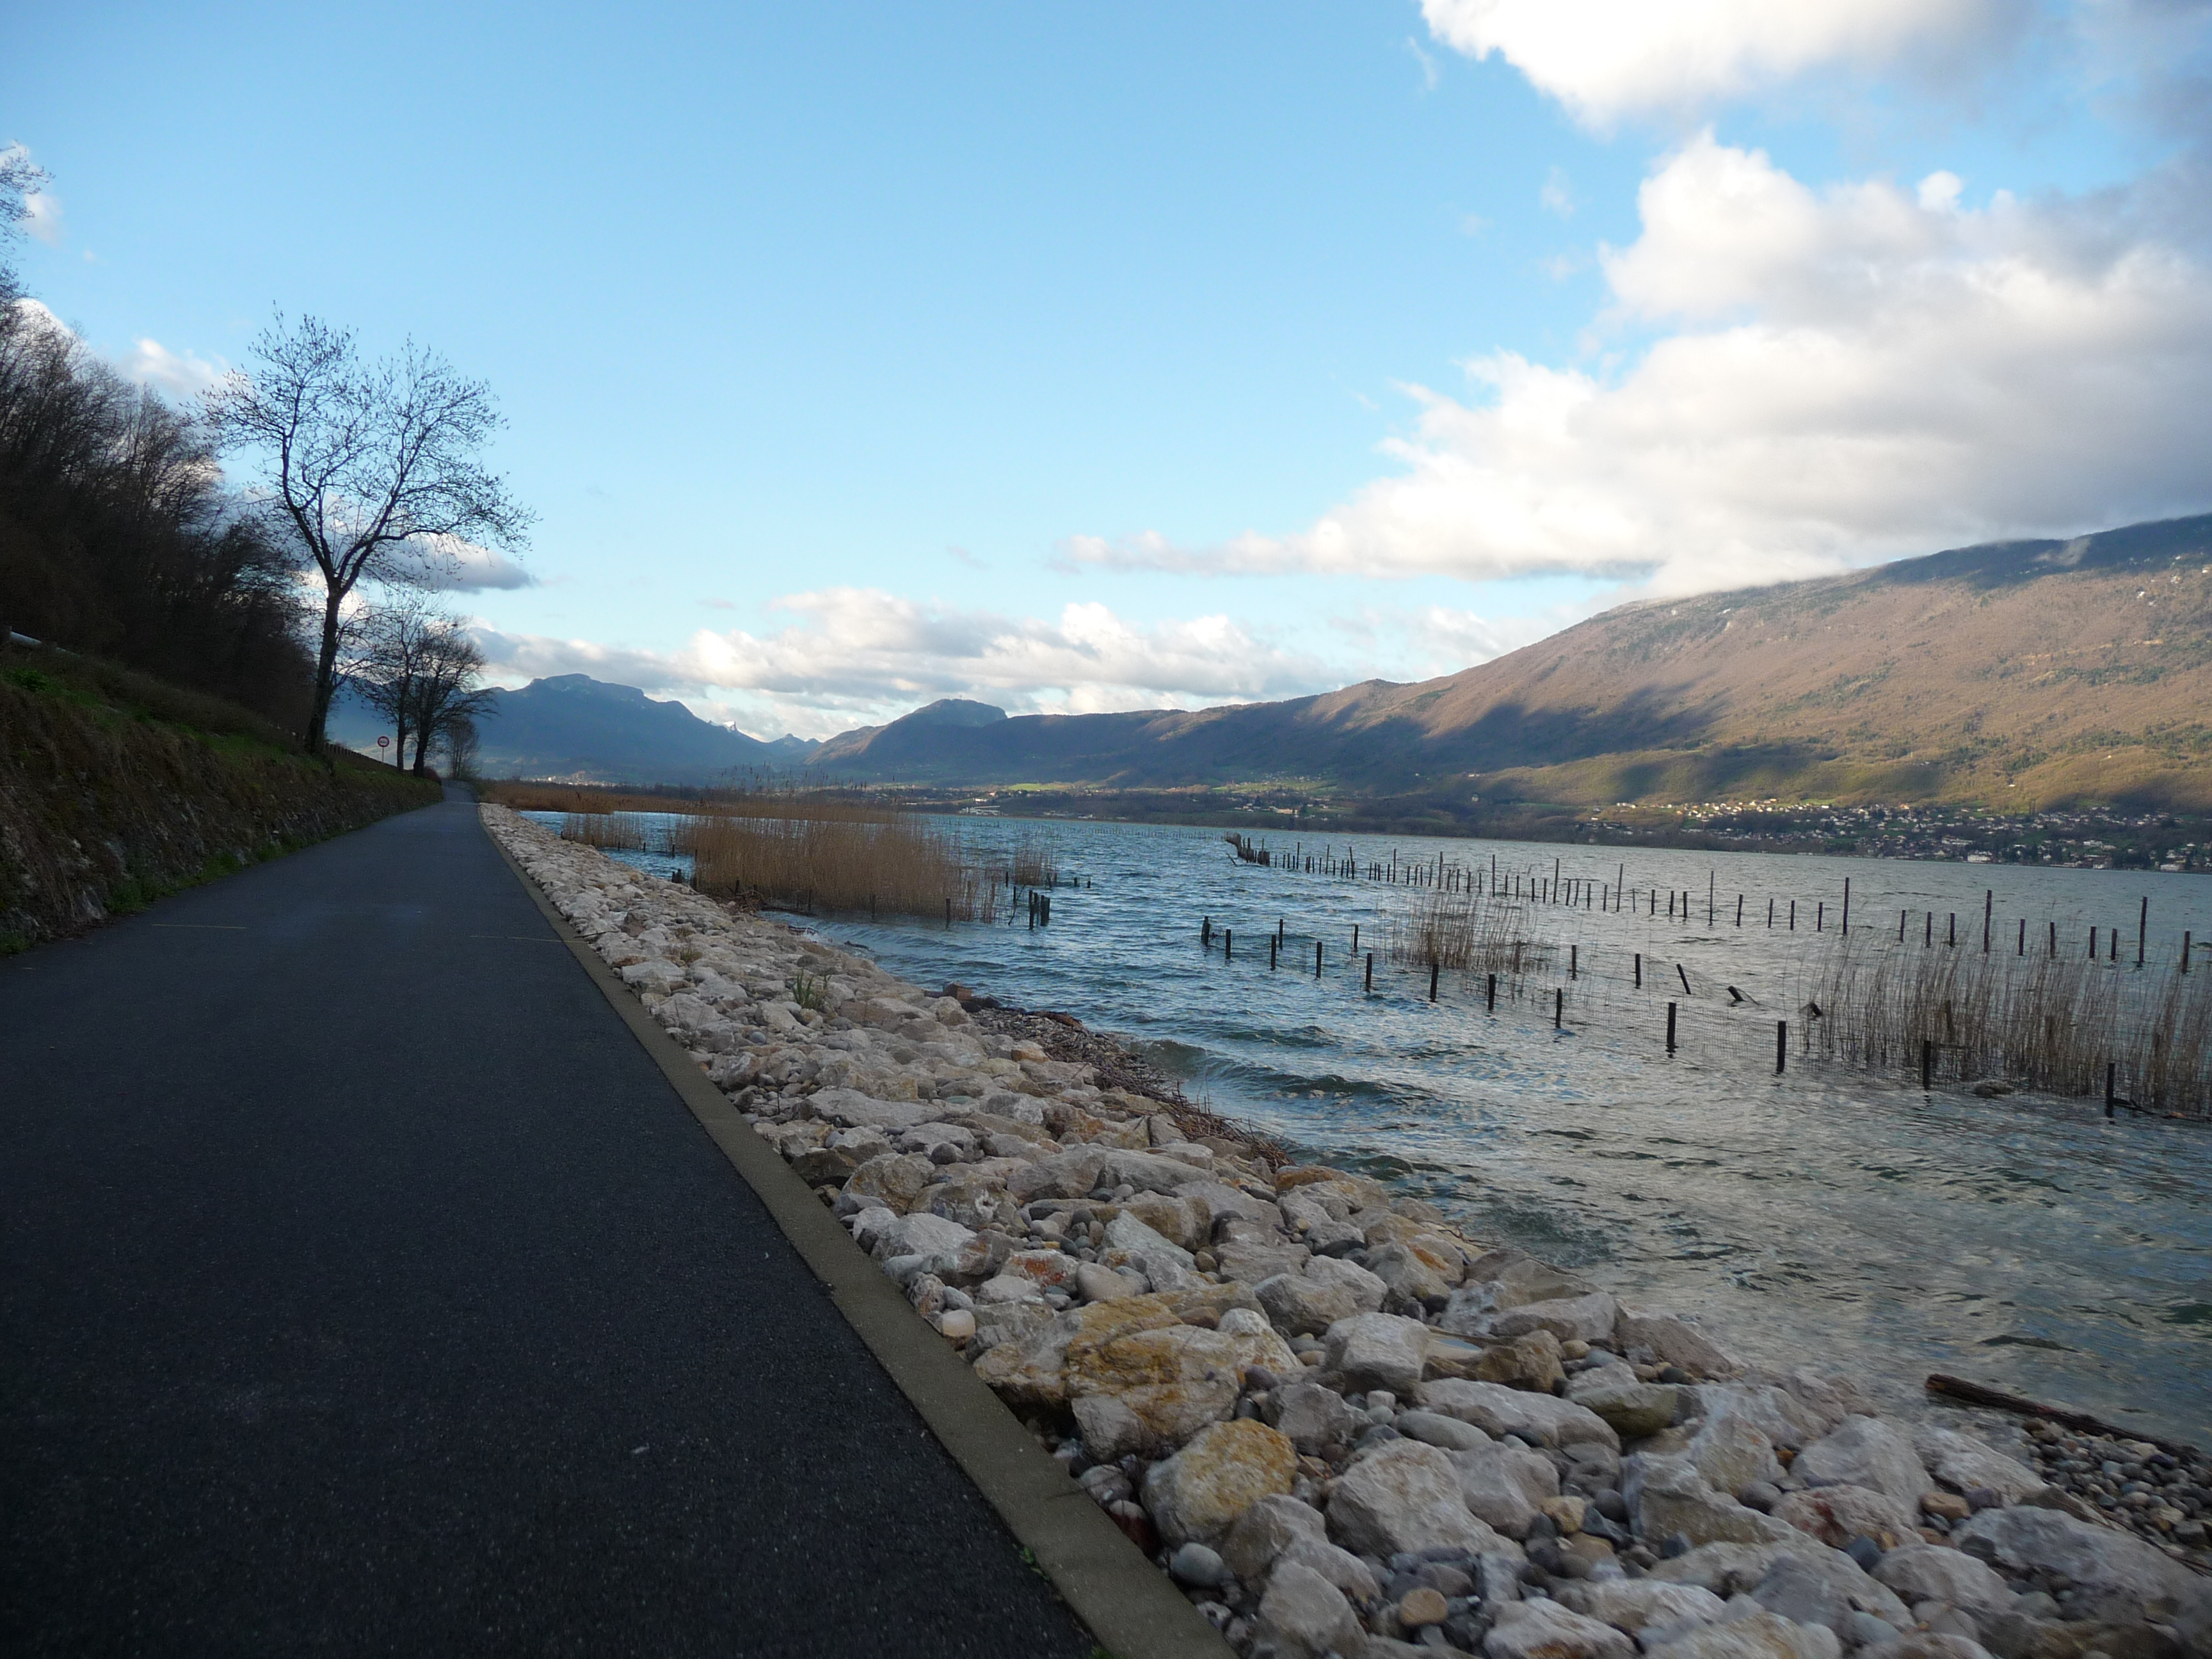 Cycling path along Lake Bourget